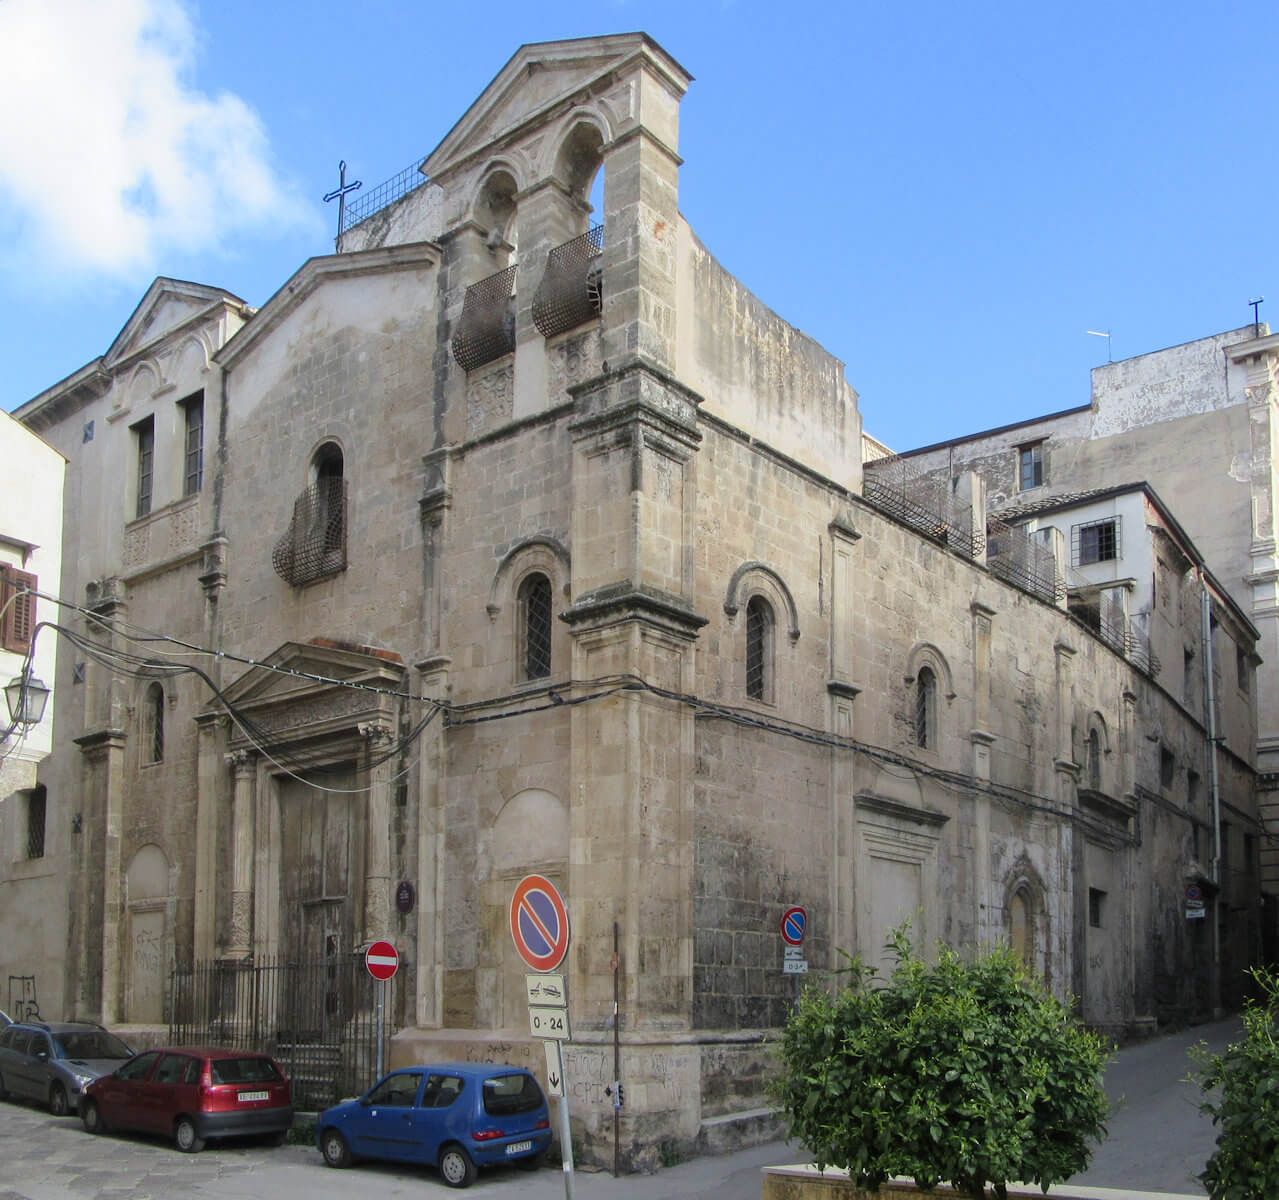 Kirche Sant'Agata alla Guilla in Palermo, angeblich errichtet an der Stelle ihres Geburtshauses